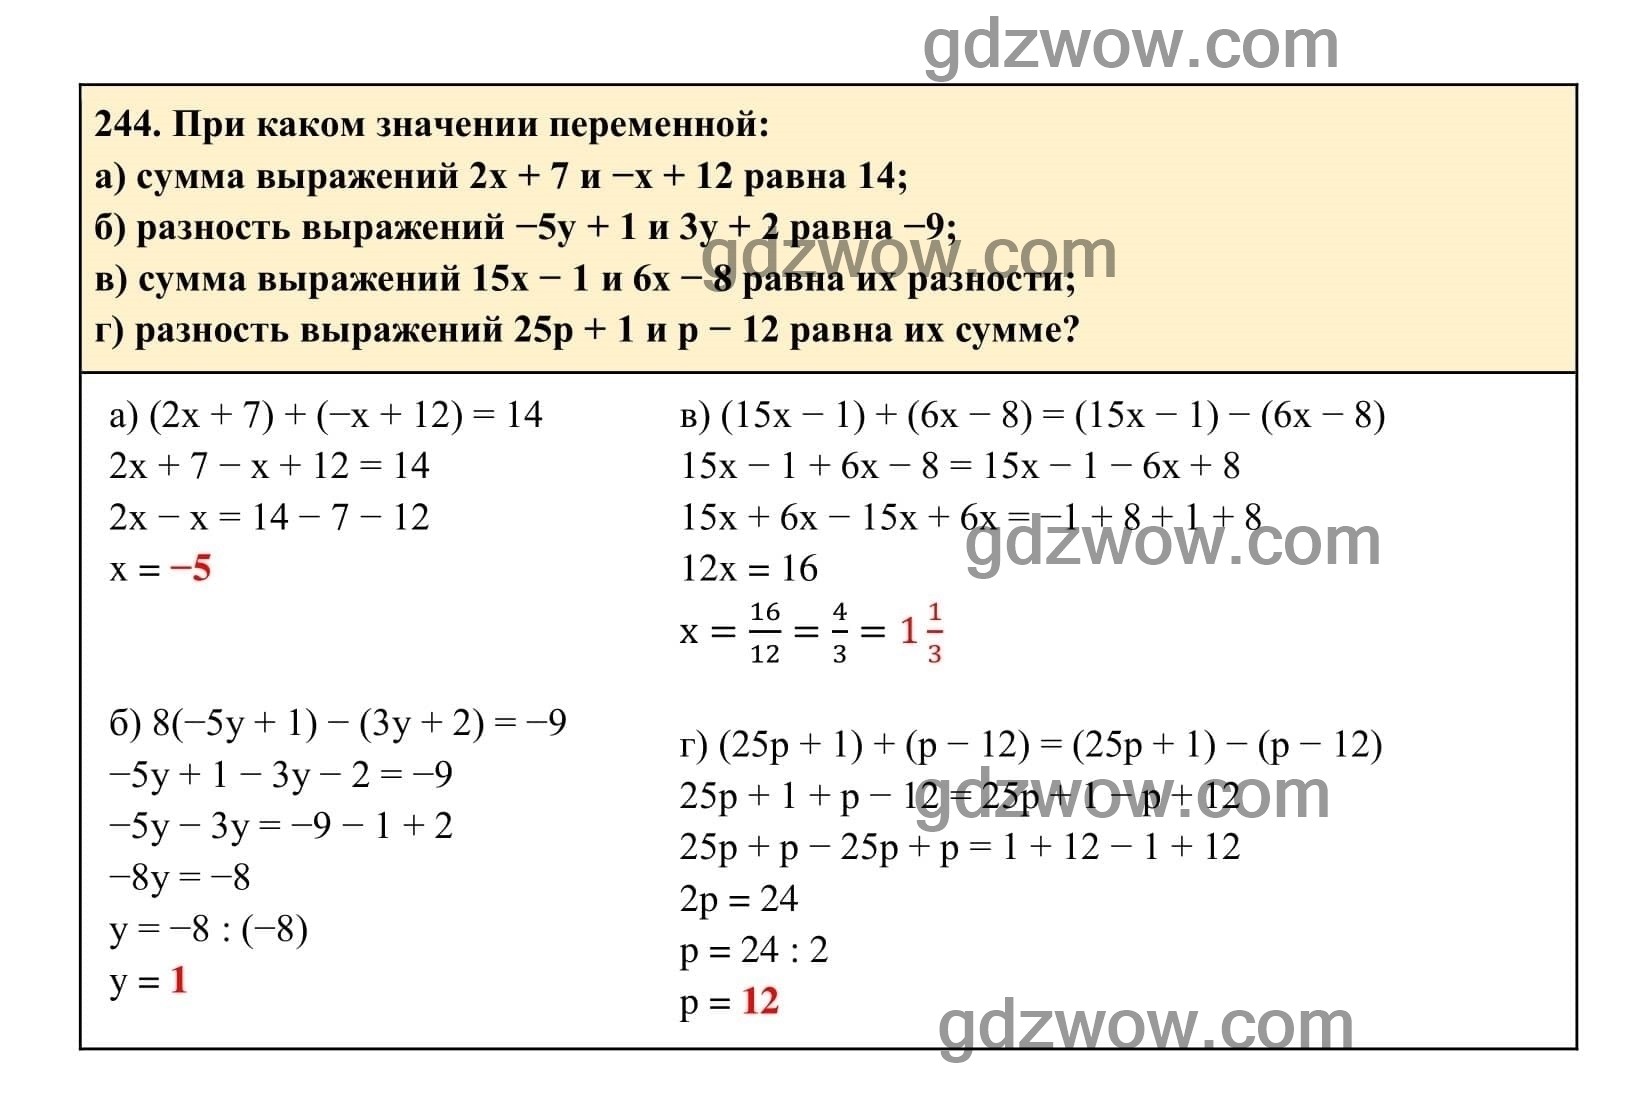 Упражнение 244 - ГДЗ по Алгебре 7 класс Учебник Макарычев (решебник) - GDZwow